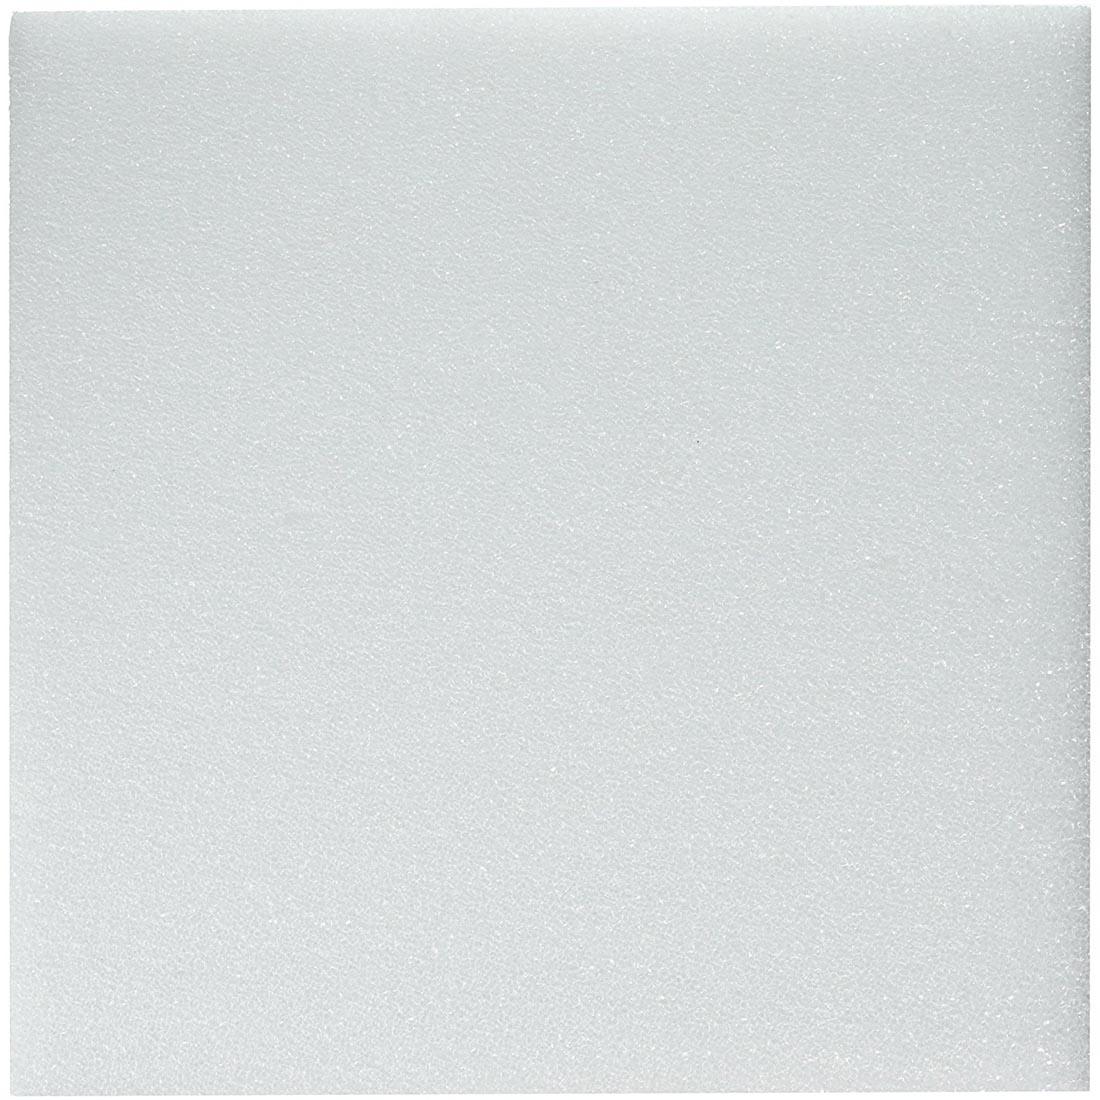 Square White craft foam Sheet